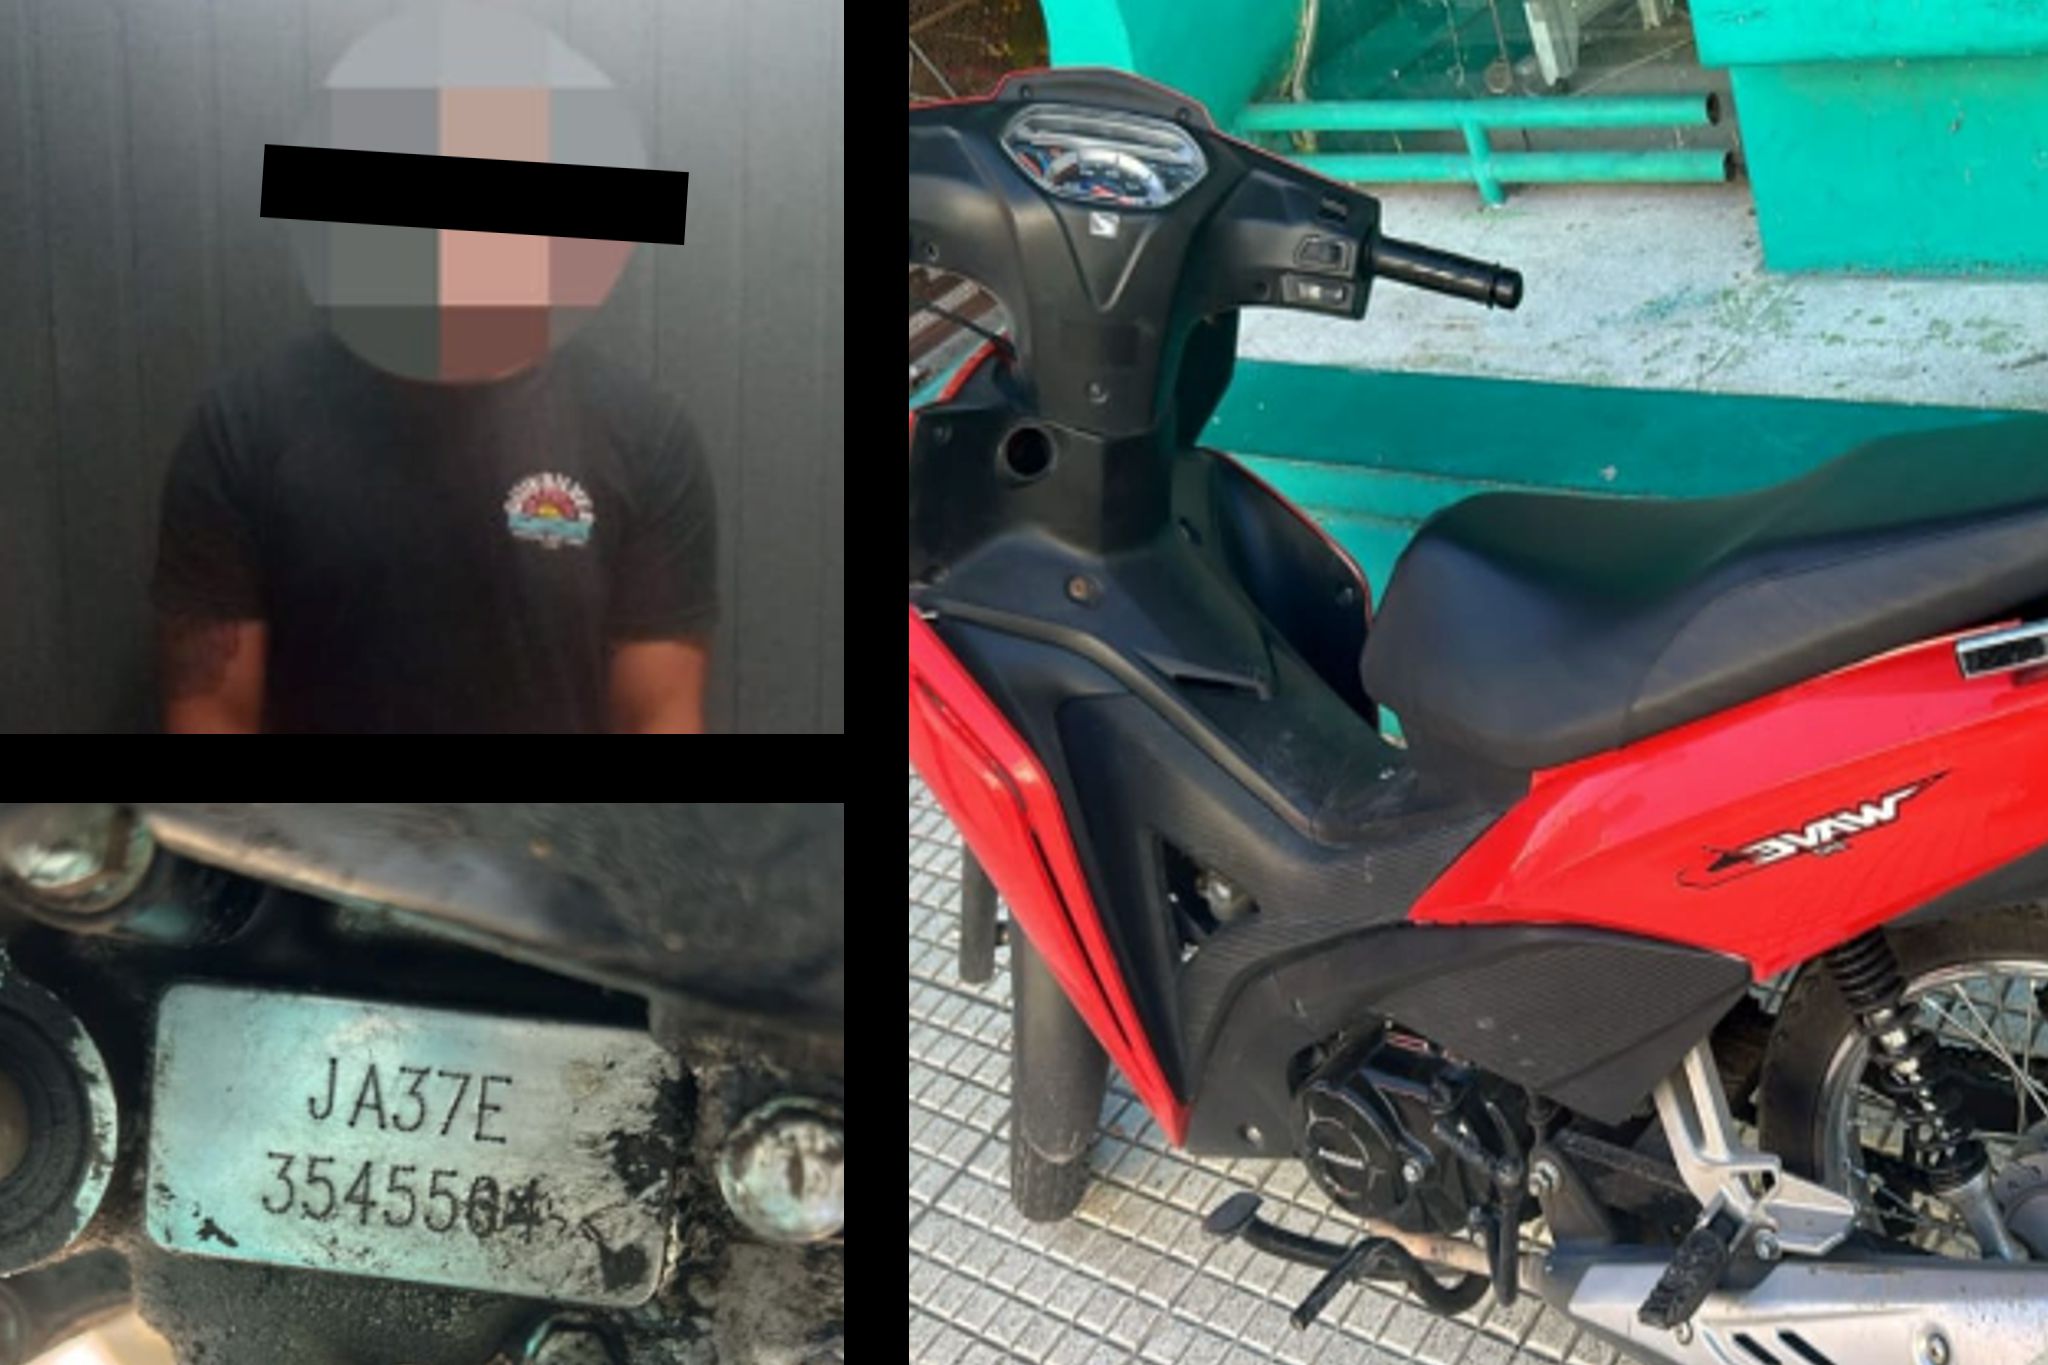 moto robada en villa gobernador galvez